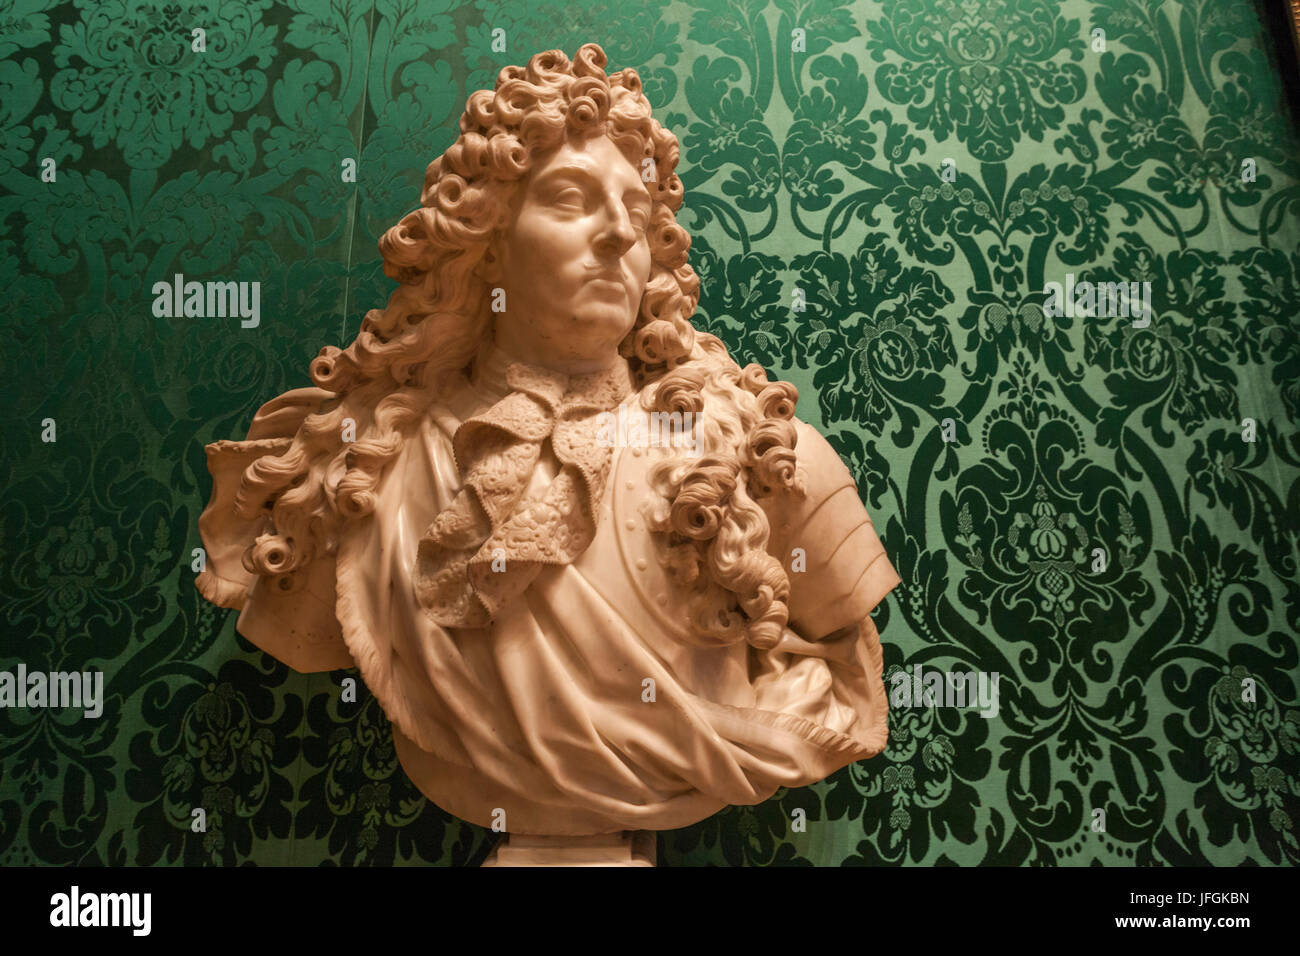 Inghilterra, Londra, Wallace Collection Museum, il busto in marmo di Luigi XIV Re di Francia Foto Stock